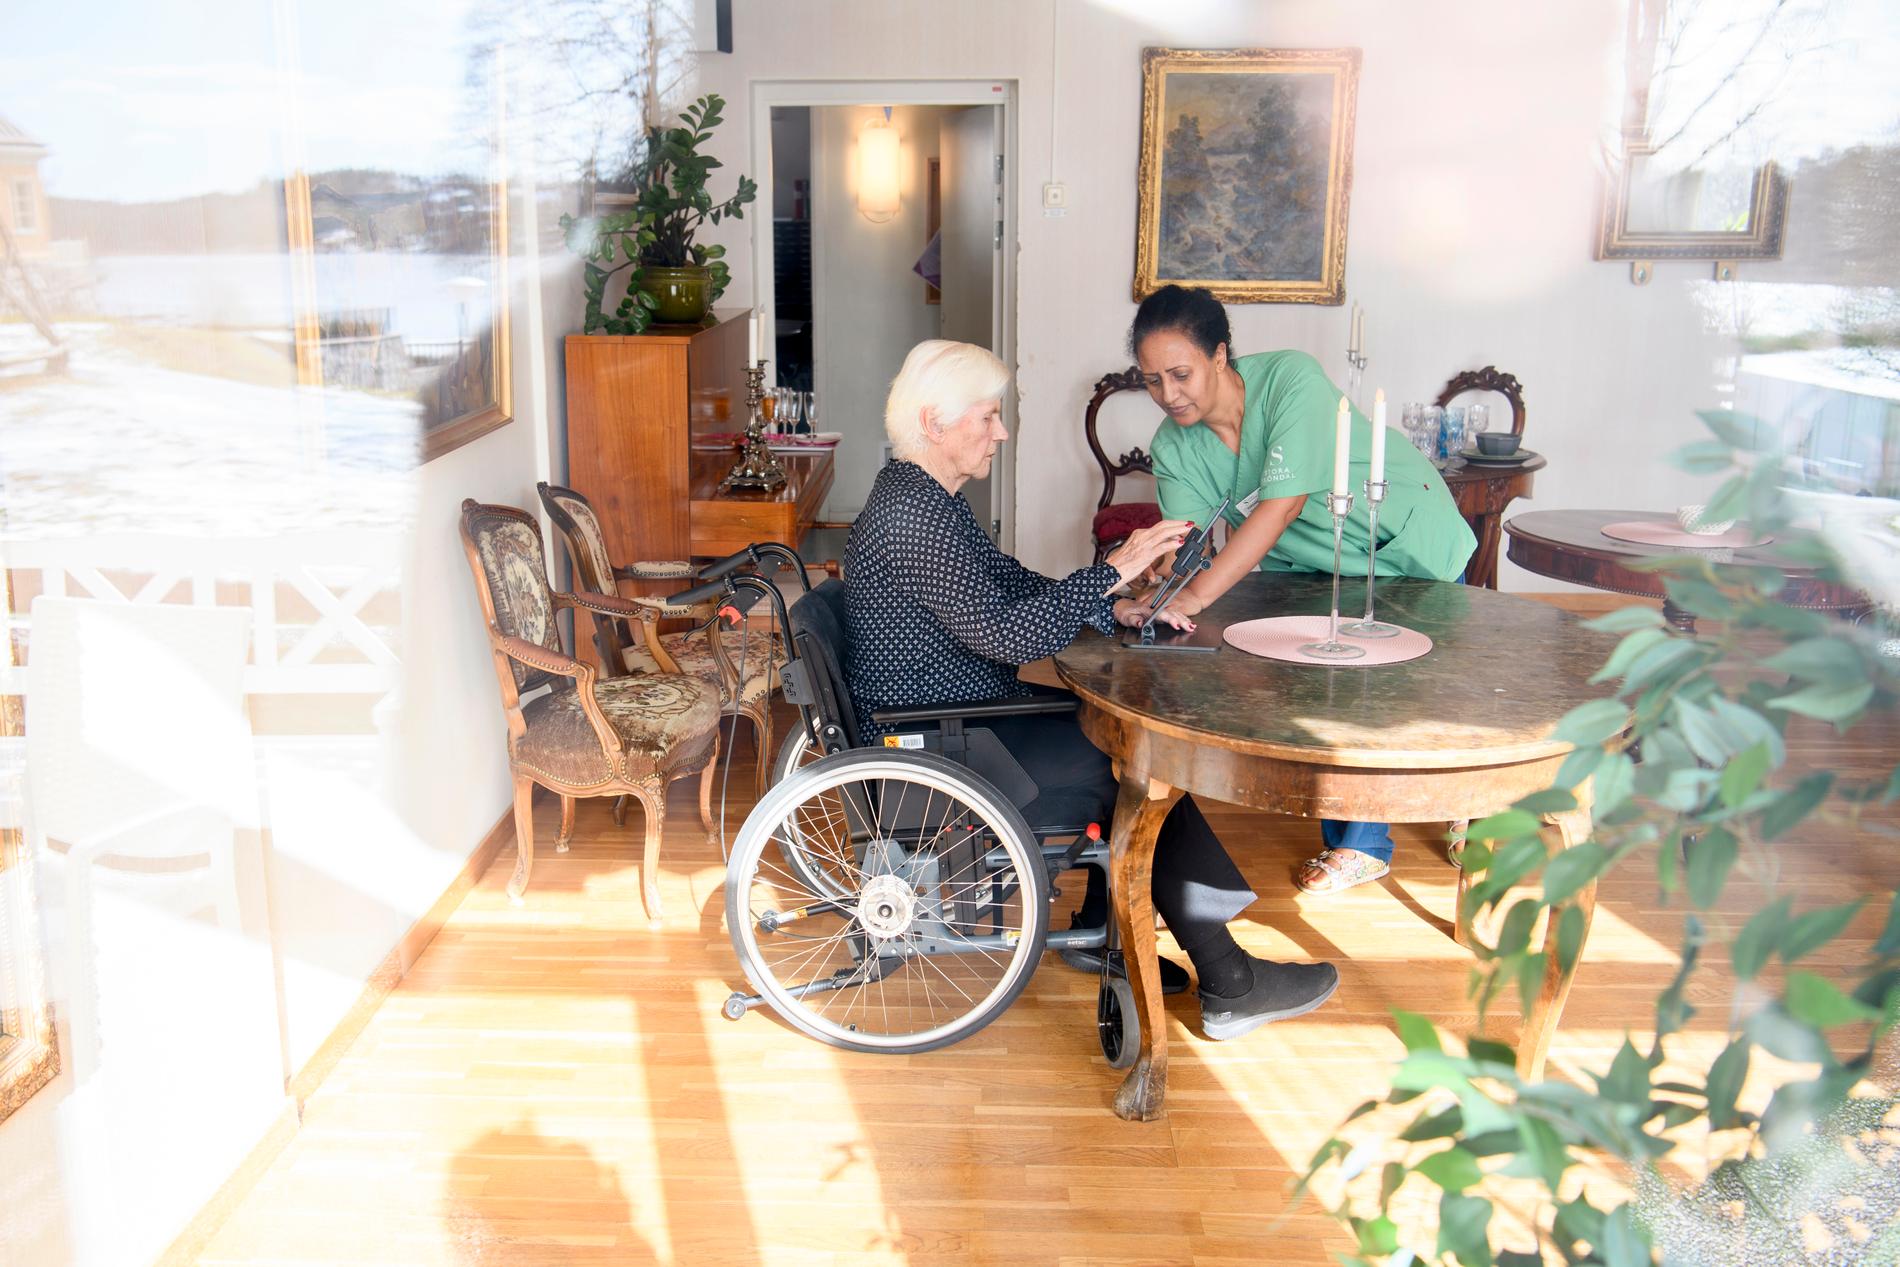 Brita Öhman på äldreboendet Kyrkbyn i Stora Sköndal får hjälp av Yordanos Teklezghi med att komma i gång med ett videosamtal.